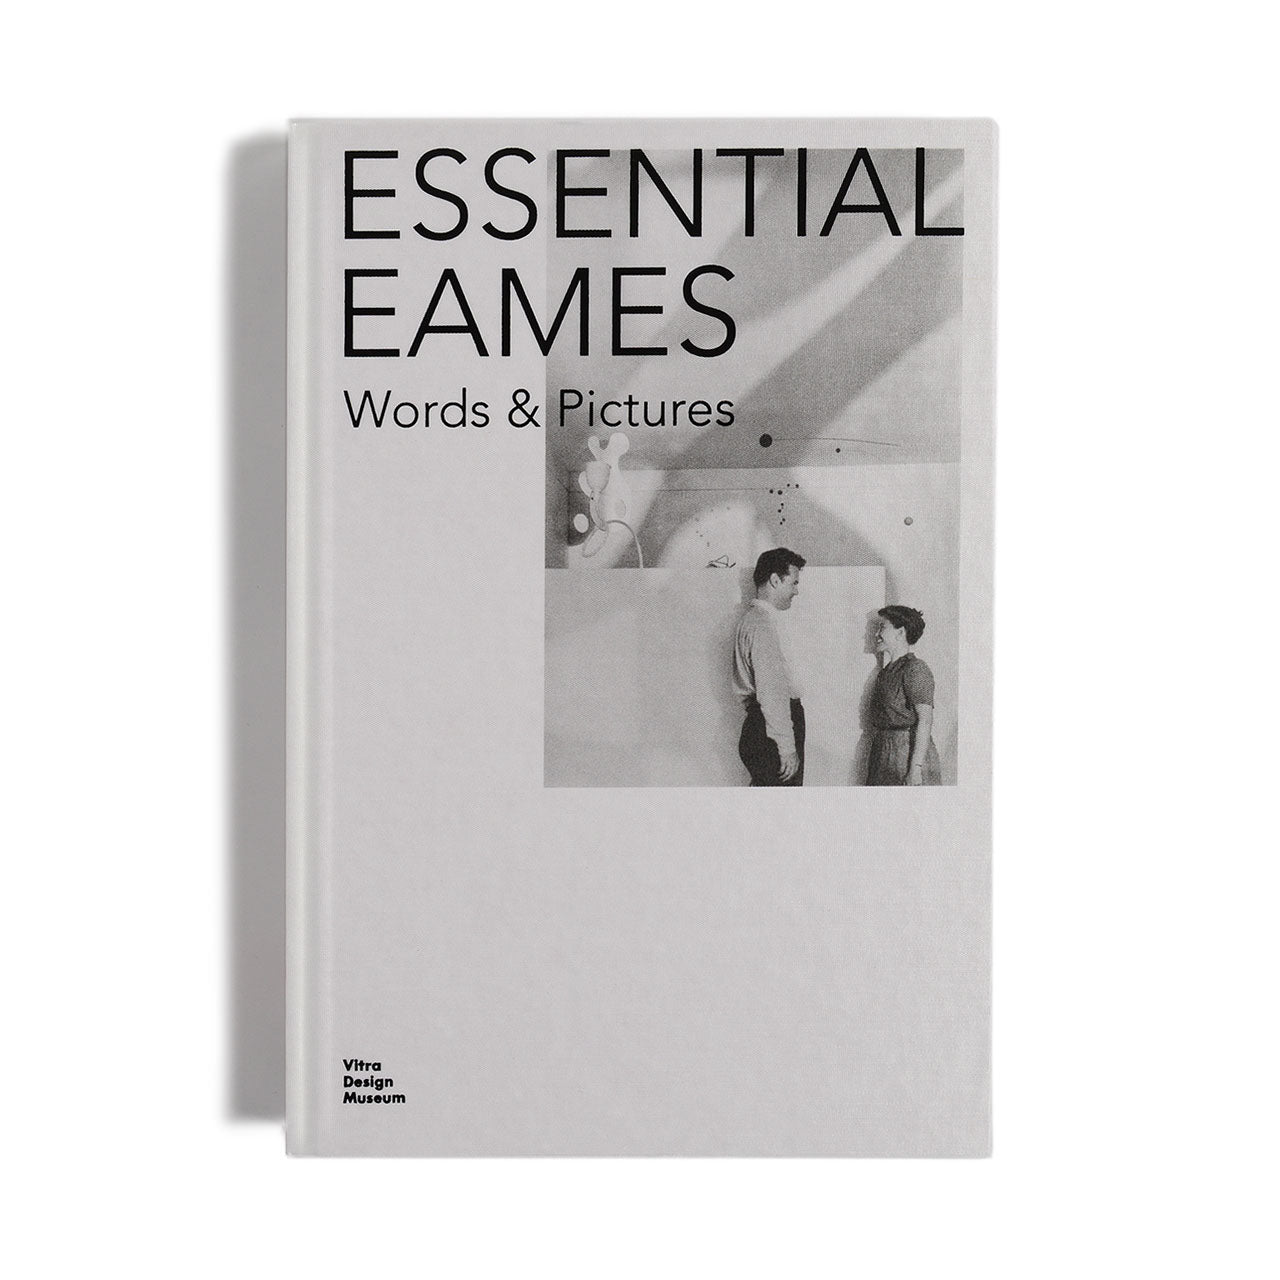 Wesentliche Eames